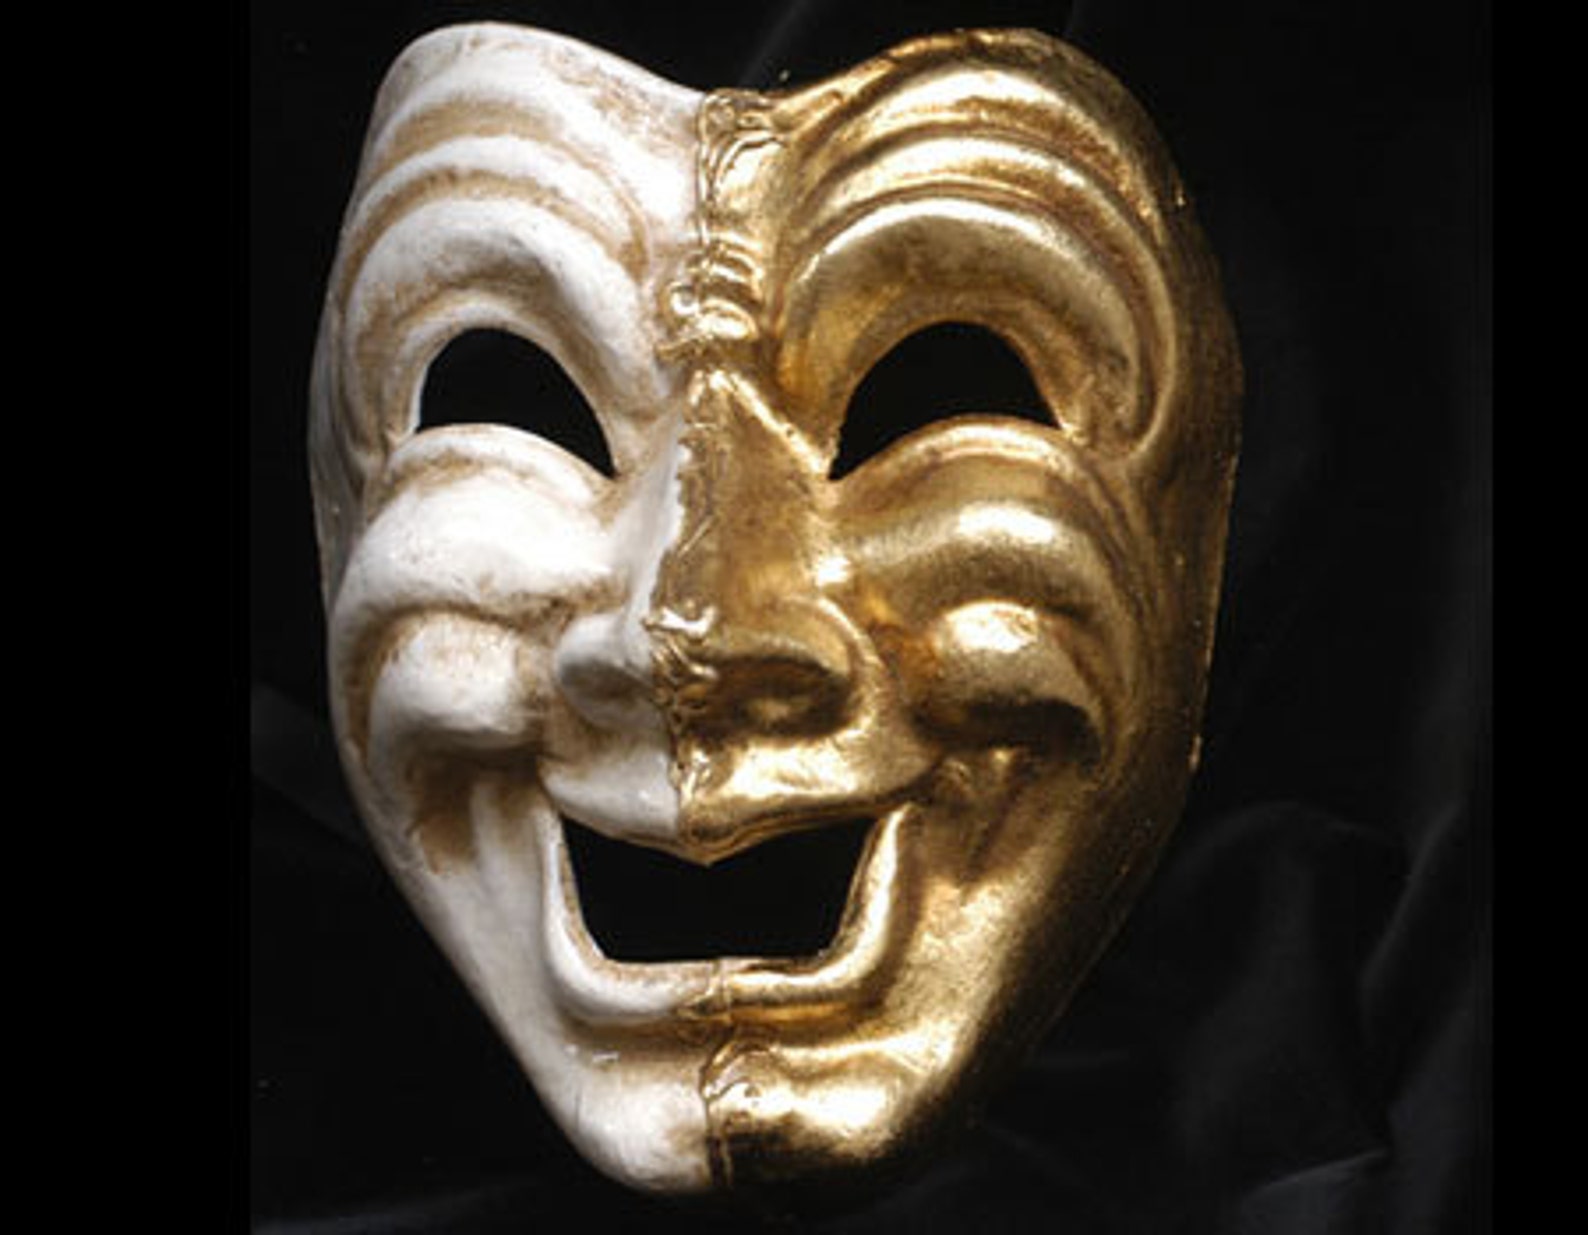 Original маска. Венецианские маски трагедия и комедия. Театральная маска трагедии. Комедия и трагедия в одной маске. Красивая маска трагедии и комедии.